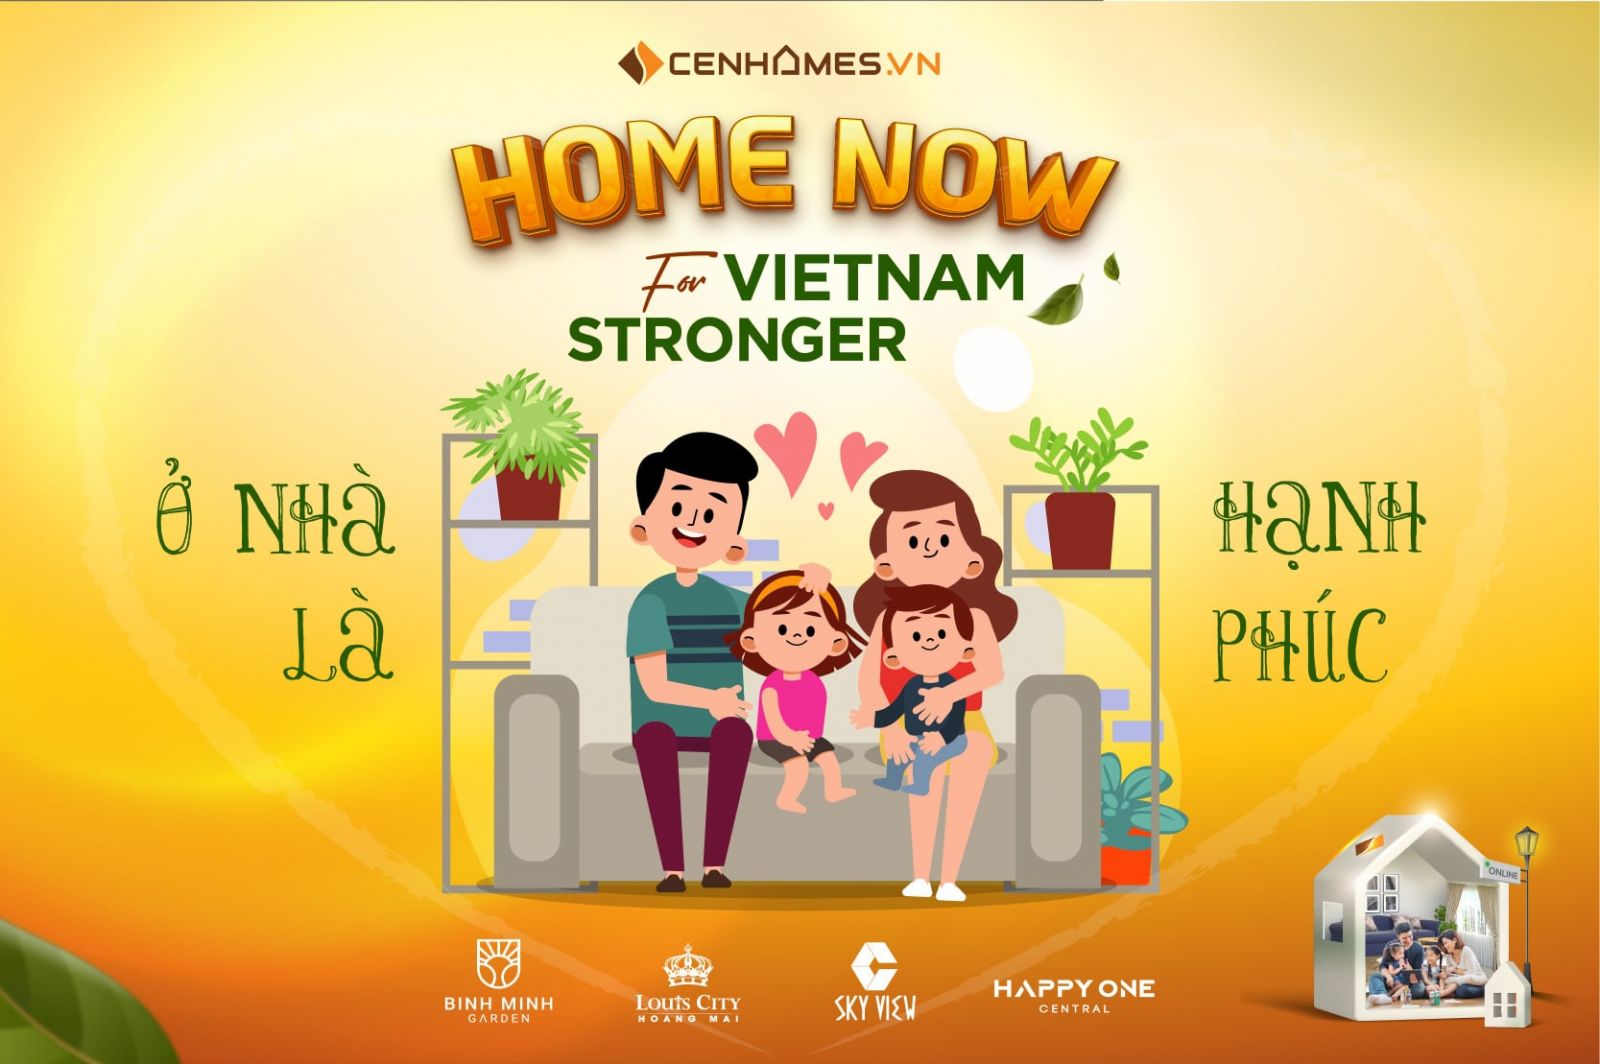 Cenhomes.vn cùng hơn 90 triệu người dân Việt Nam, ở nhà lạc quan, ý nghĩa và tạo ra kỳ tích. 